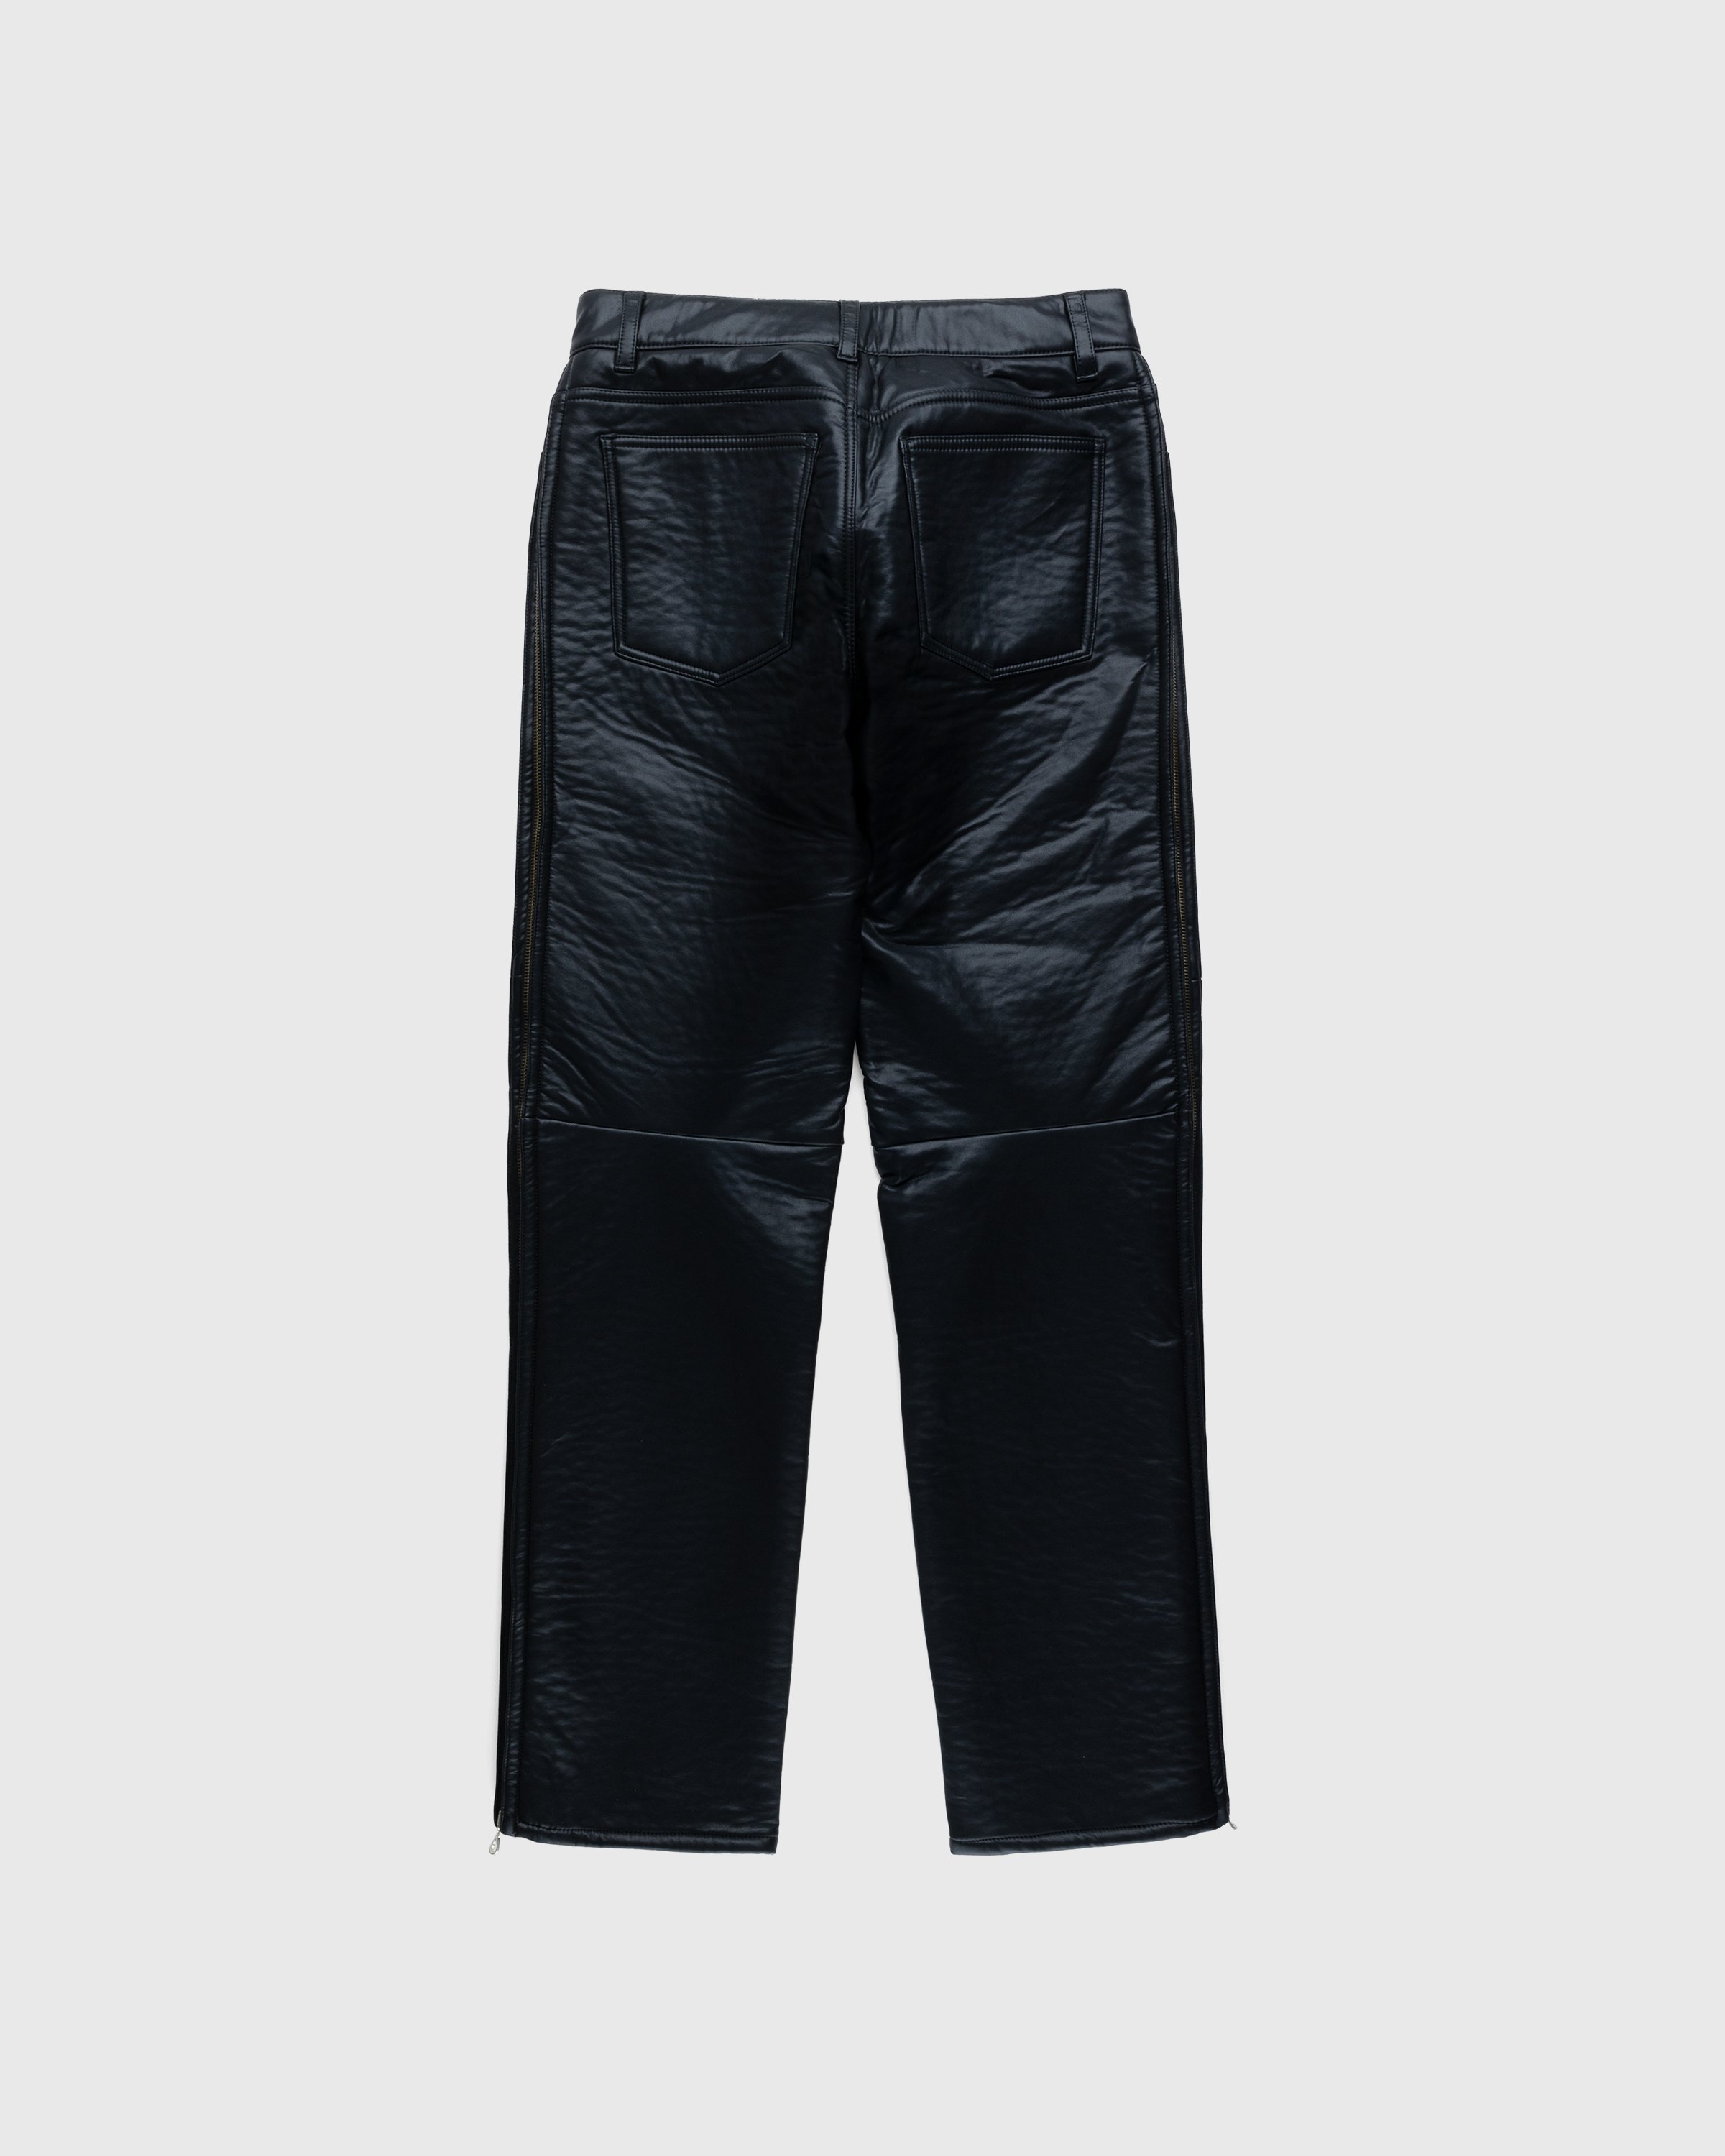 Diesel – Cirio Biker Trousers Black | Highsnobiety Shop